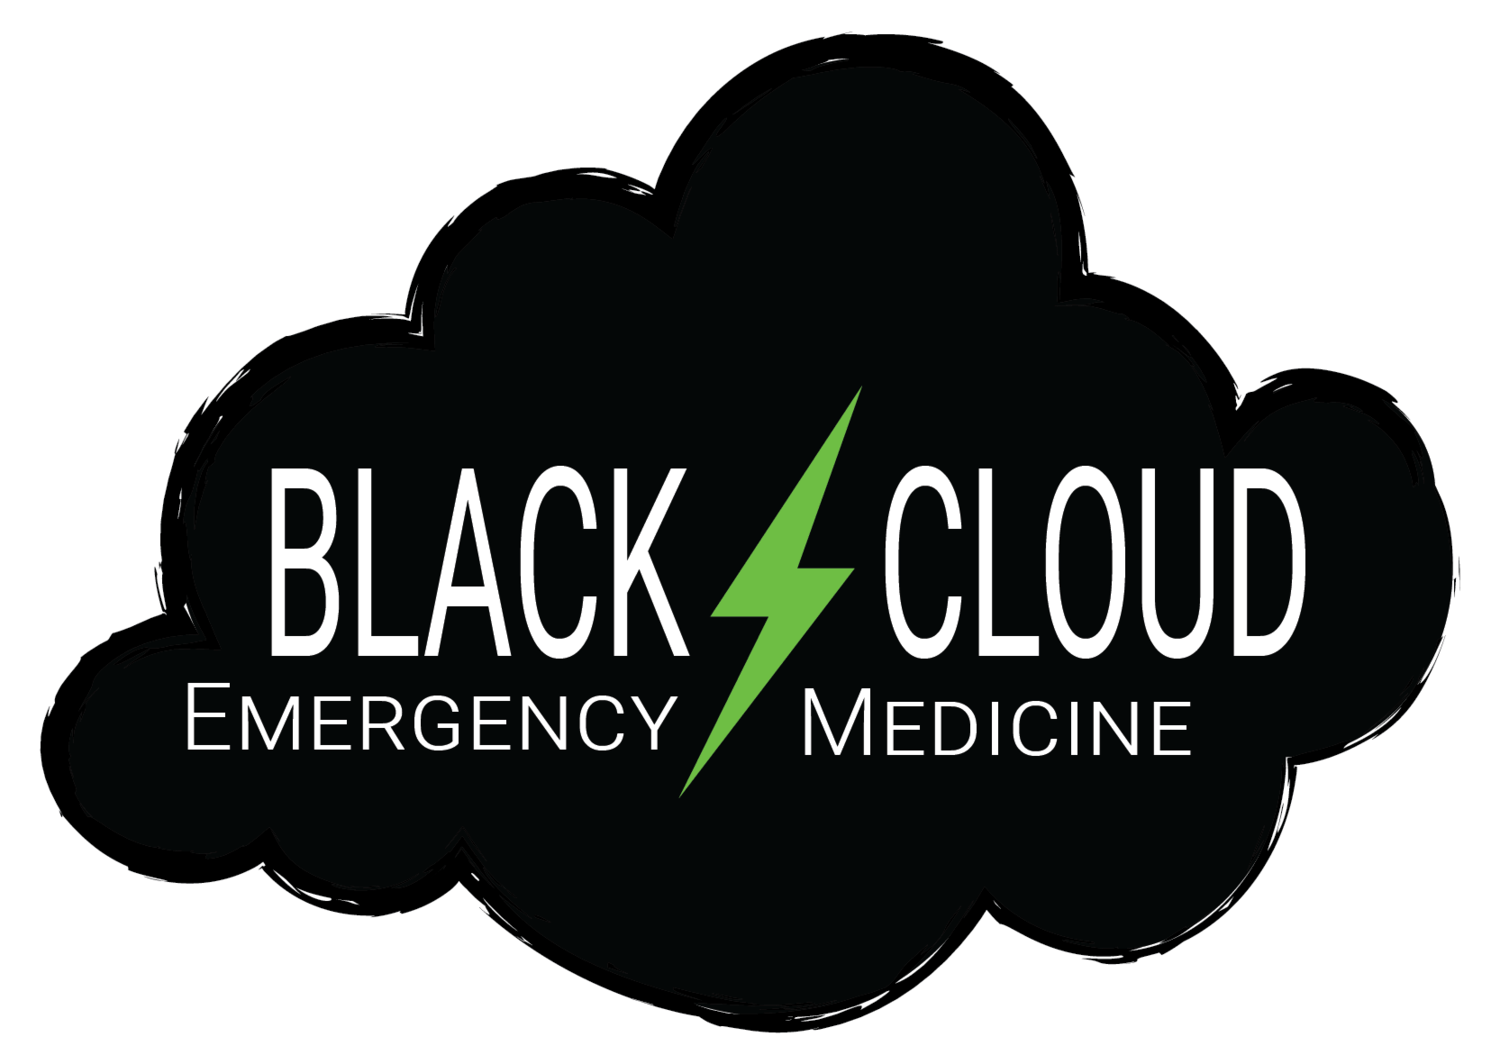 Black Cloud Logo - The Black Cloud — Black Cloud EM